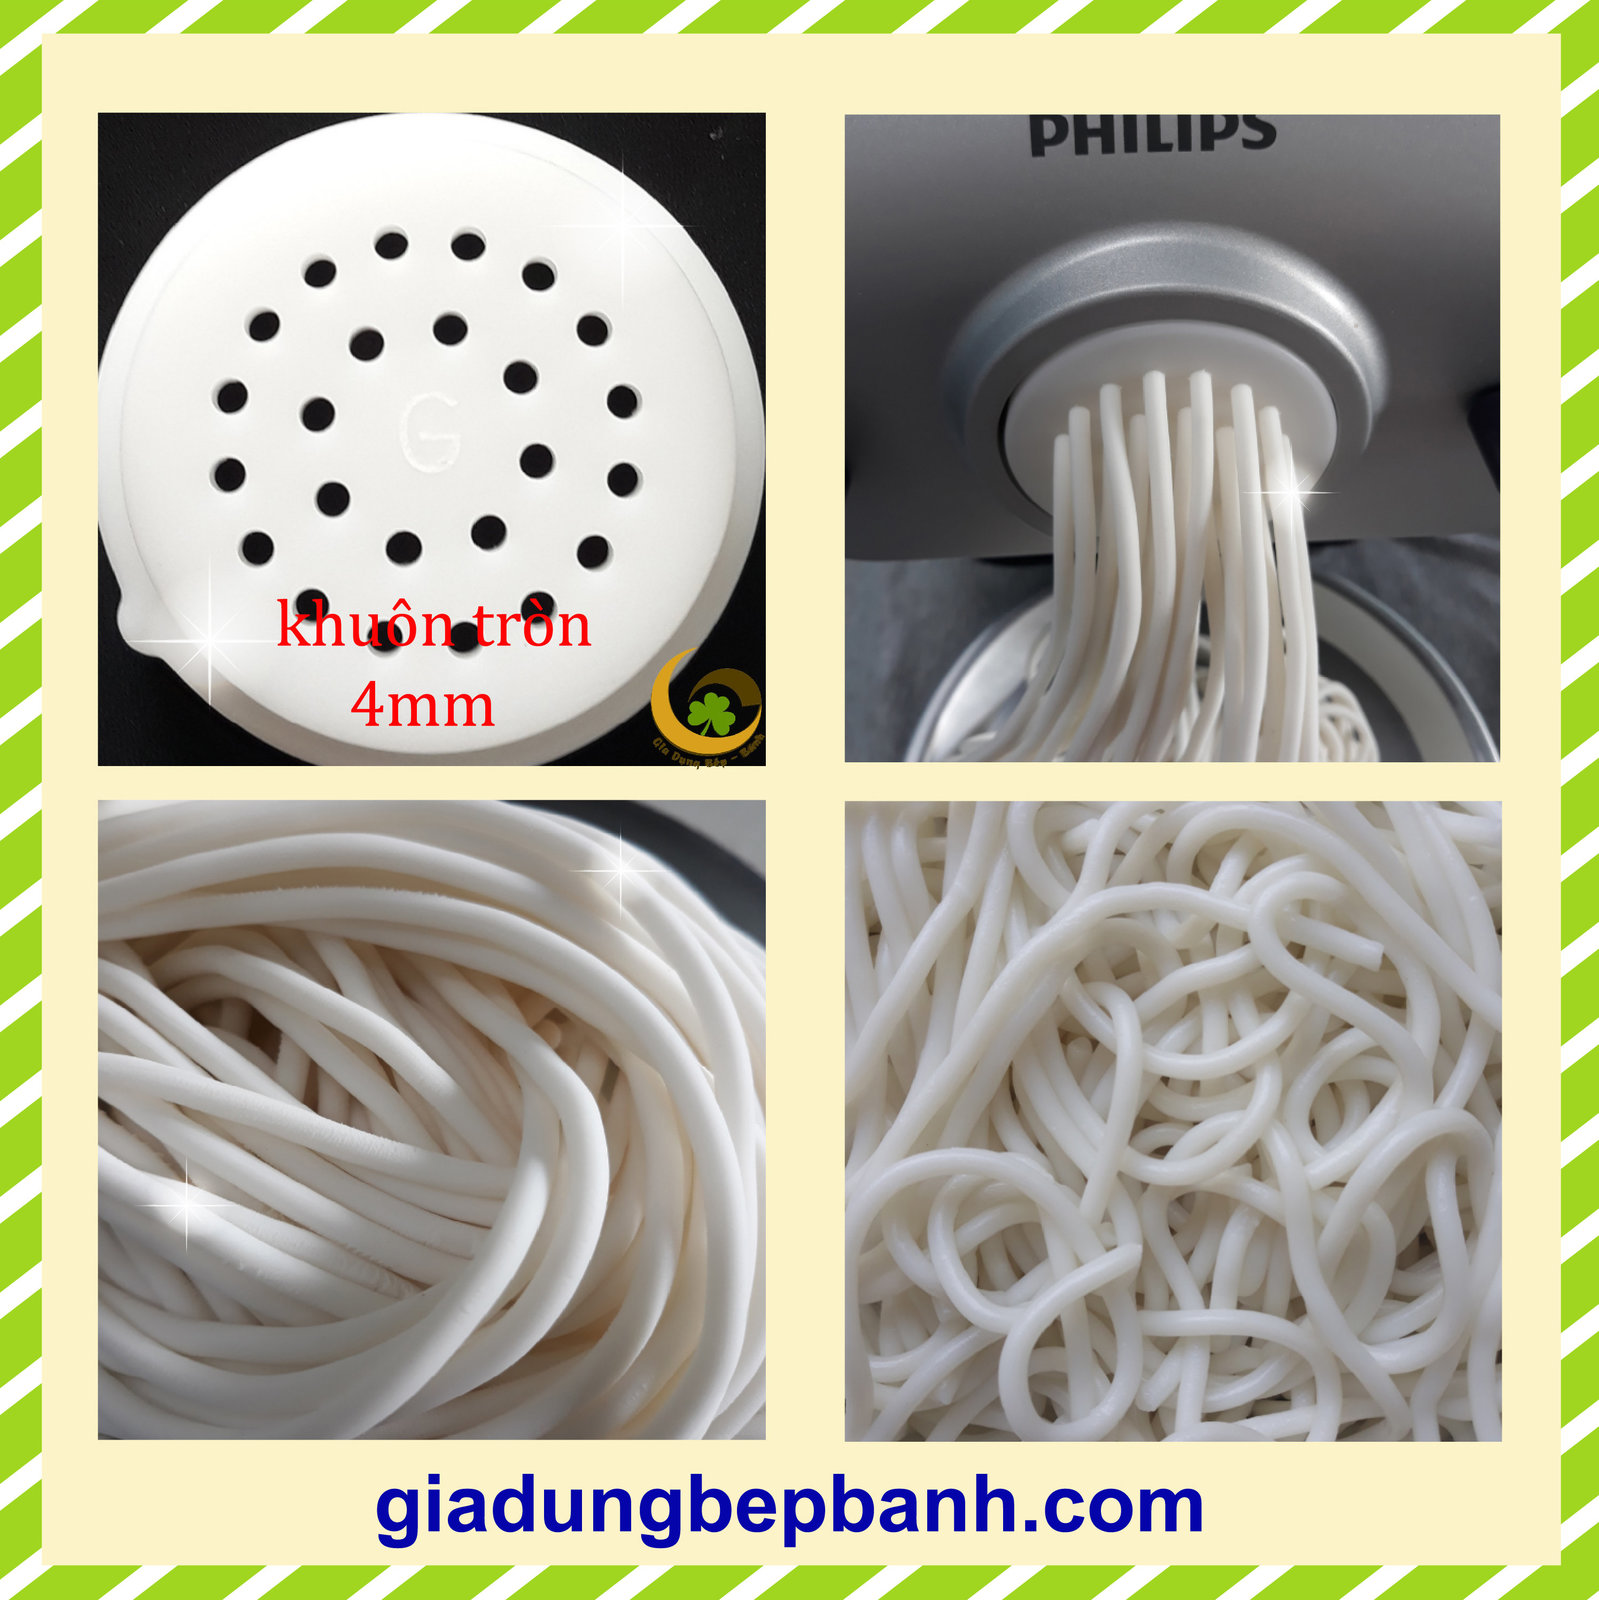 POM die Tagliatelle 8mm Fettuccine for Philips Pasta Maker Avance